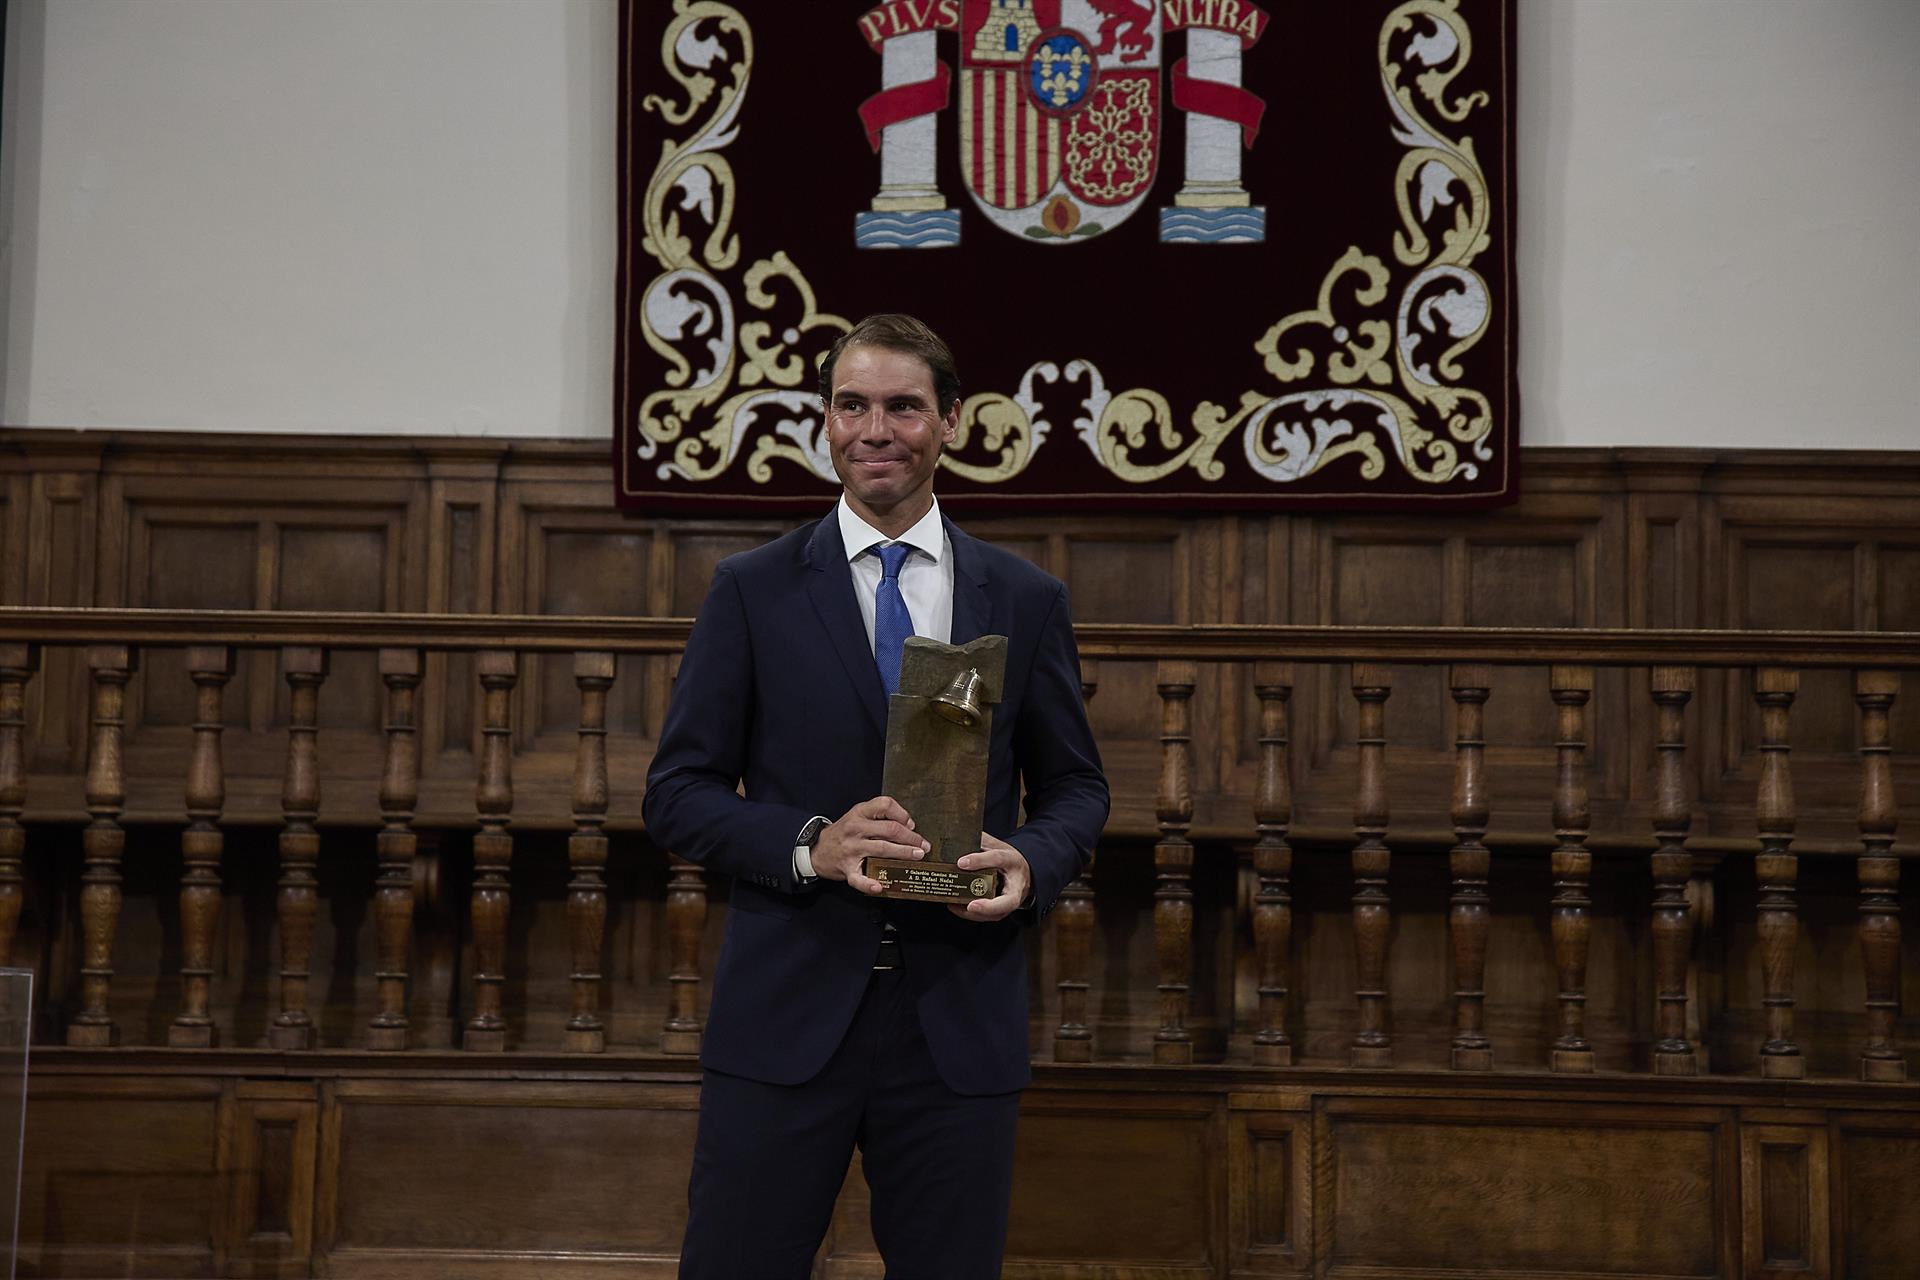 El tenista Rafa Nadal tras recibir el ‘Premio Camino Real’ por parte del Rey, durante la V edición, en el Paraninfo de la Universidad de Alcalá, a 20 de septiembre de 2022, en Alcalá de Henares, Madrid (España). - Jesús Hellín - Europa Press